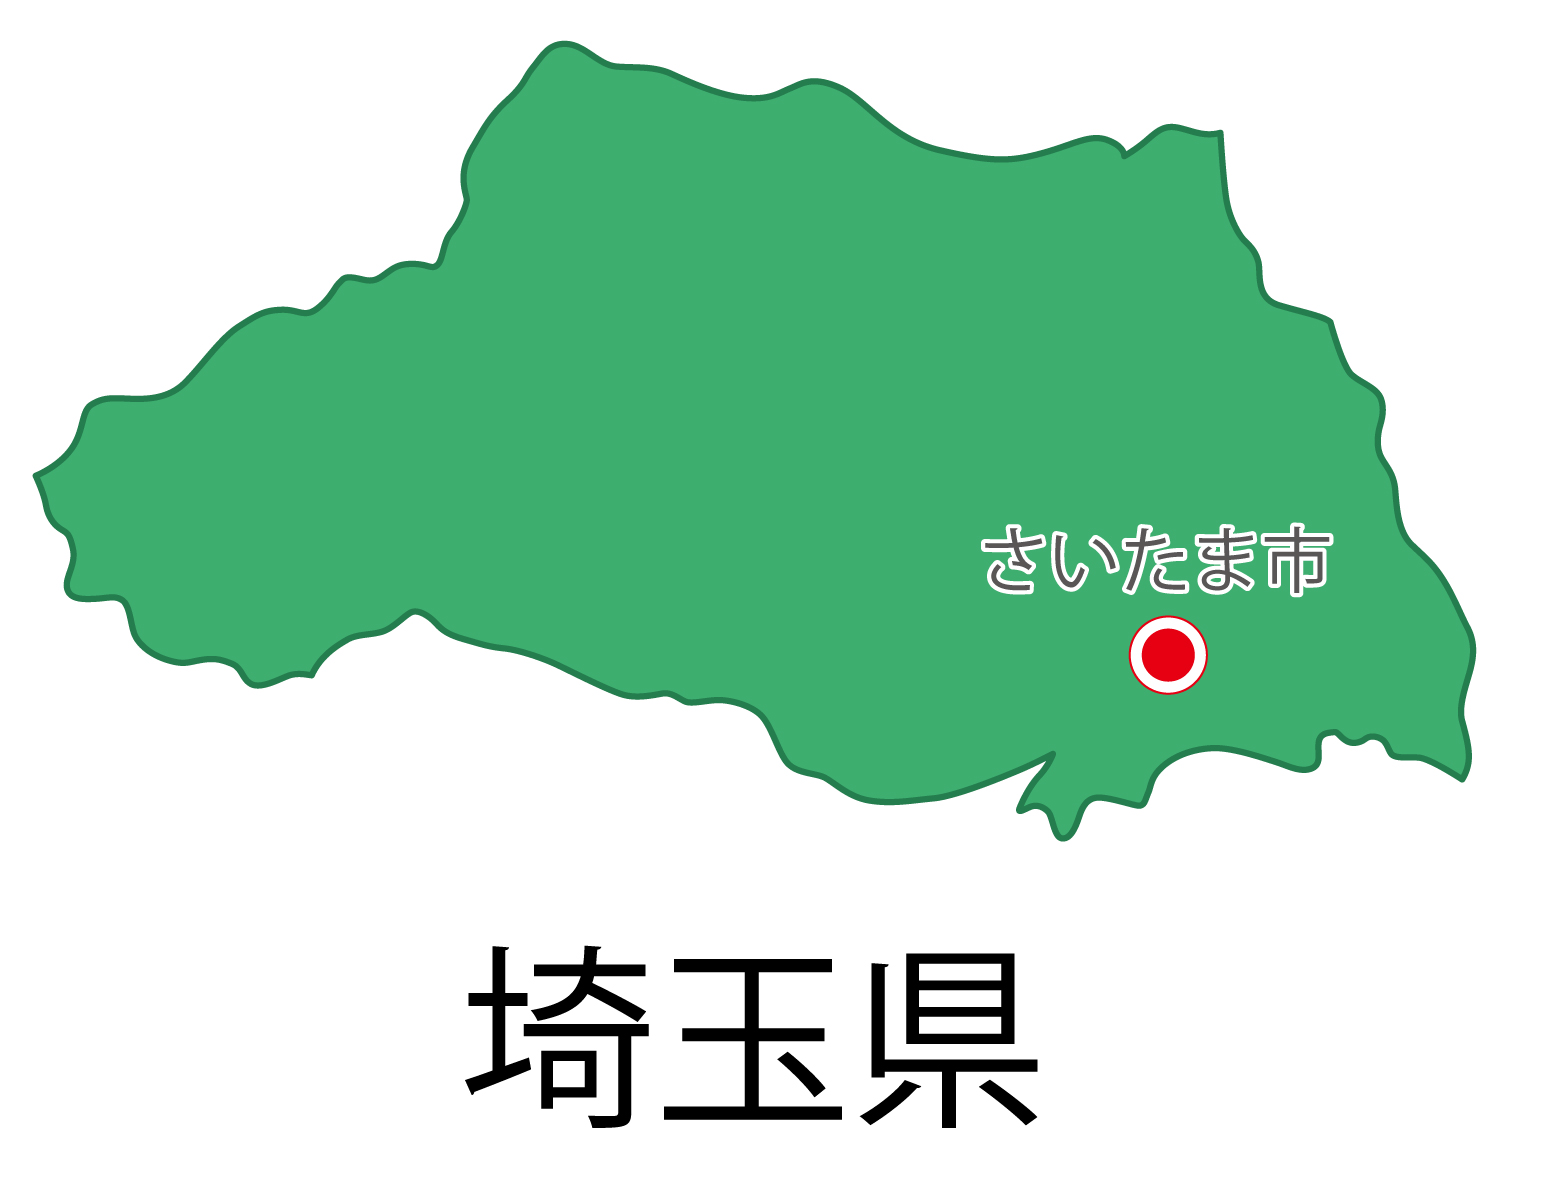 埼玉県の地図イラスト フリー素材 を無料ダウンロード